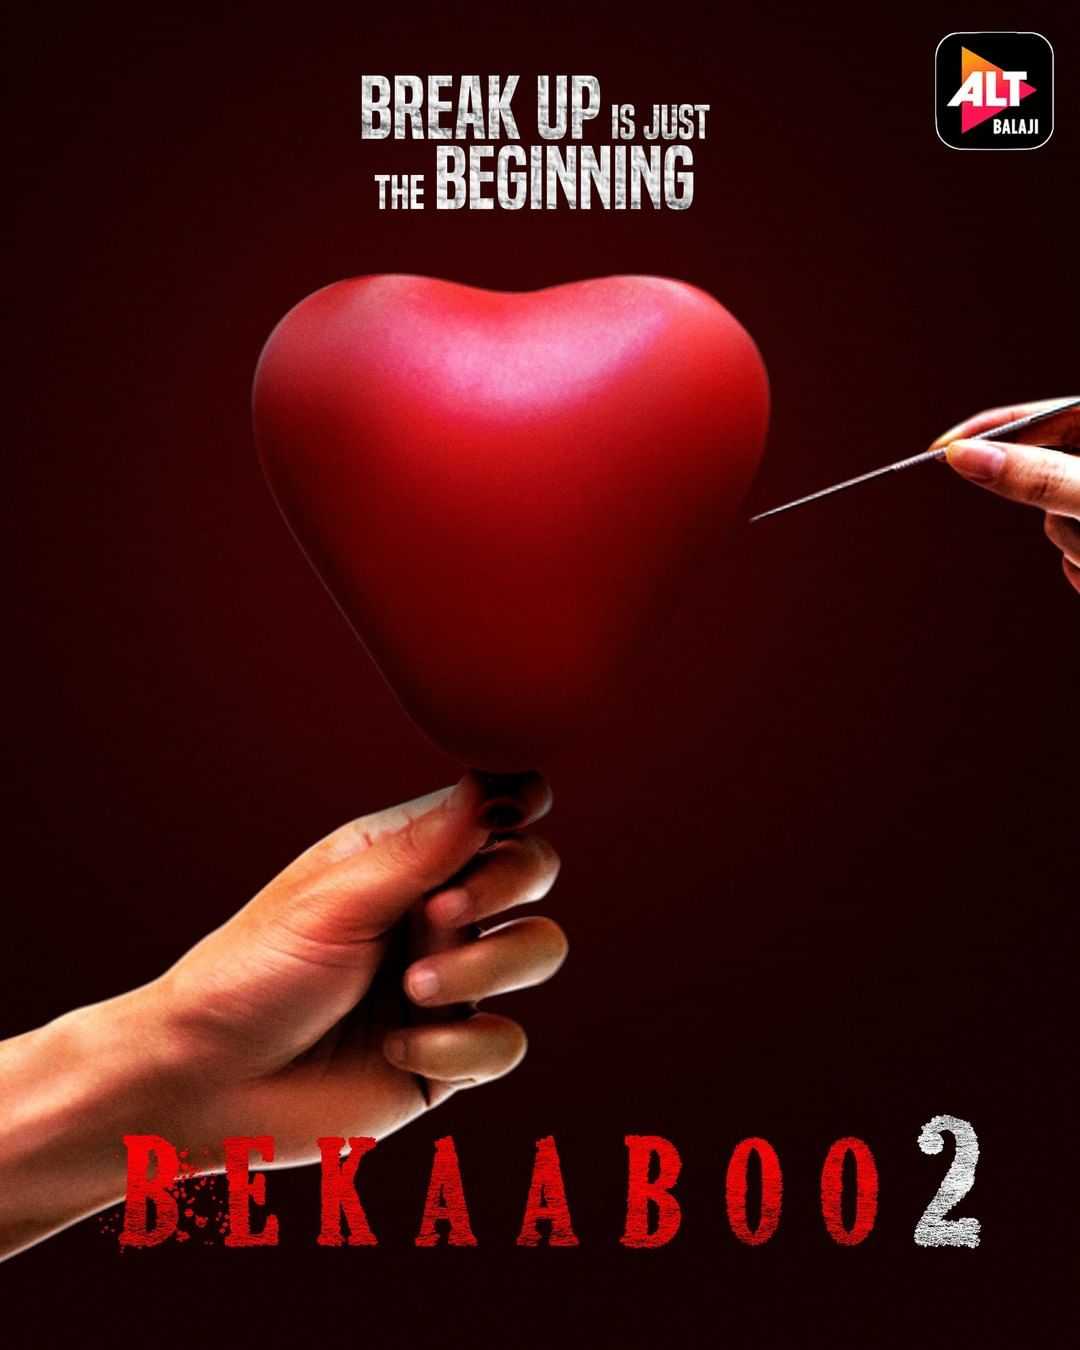 Watch Bekaaboo Season 2 Review